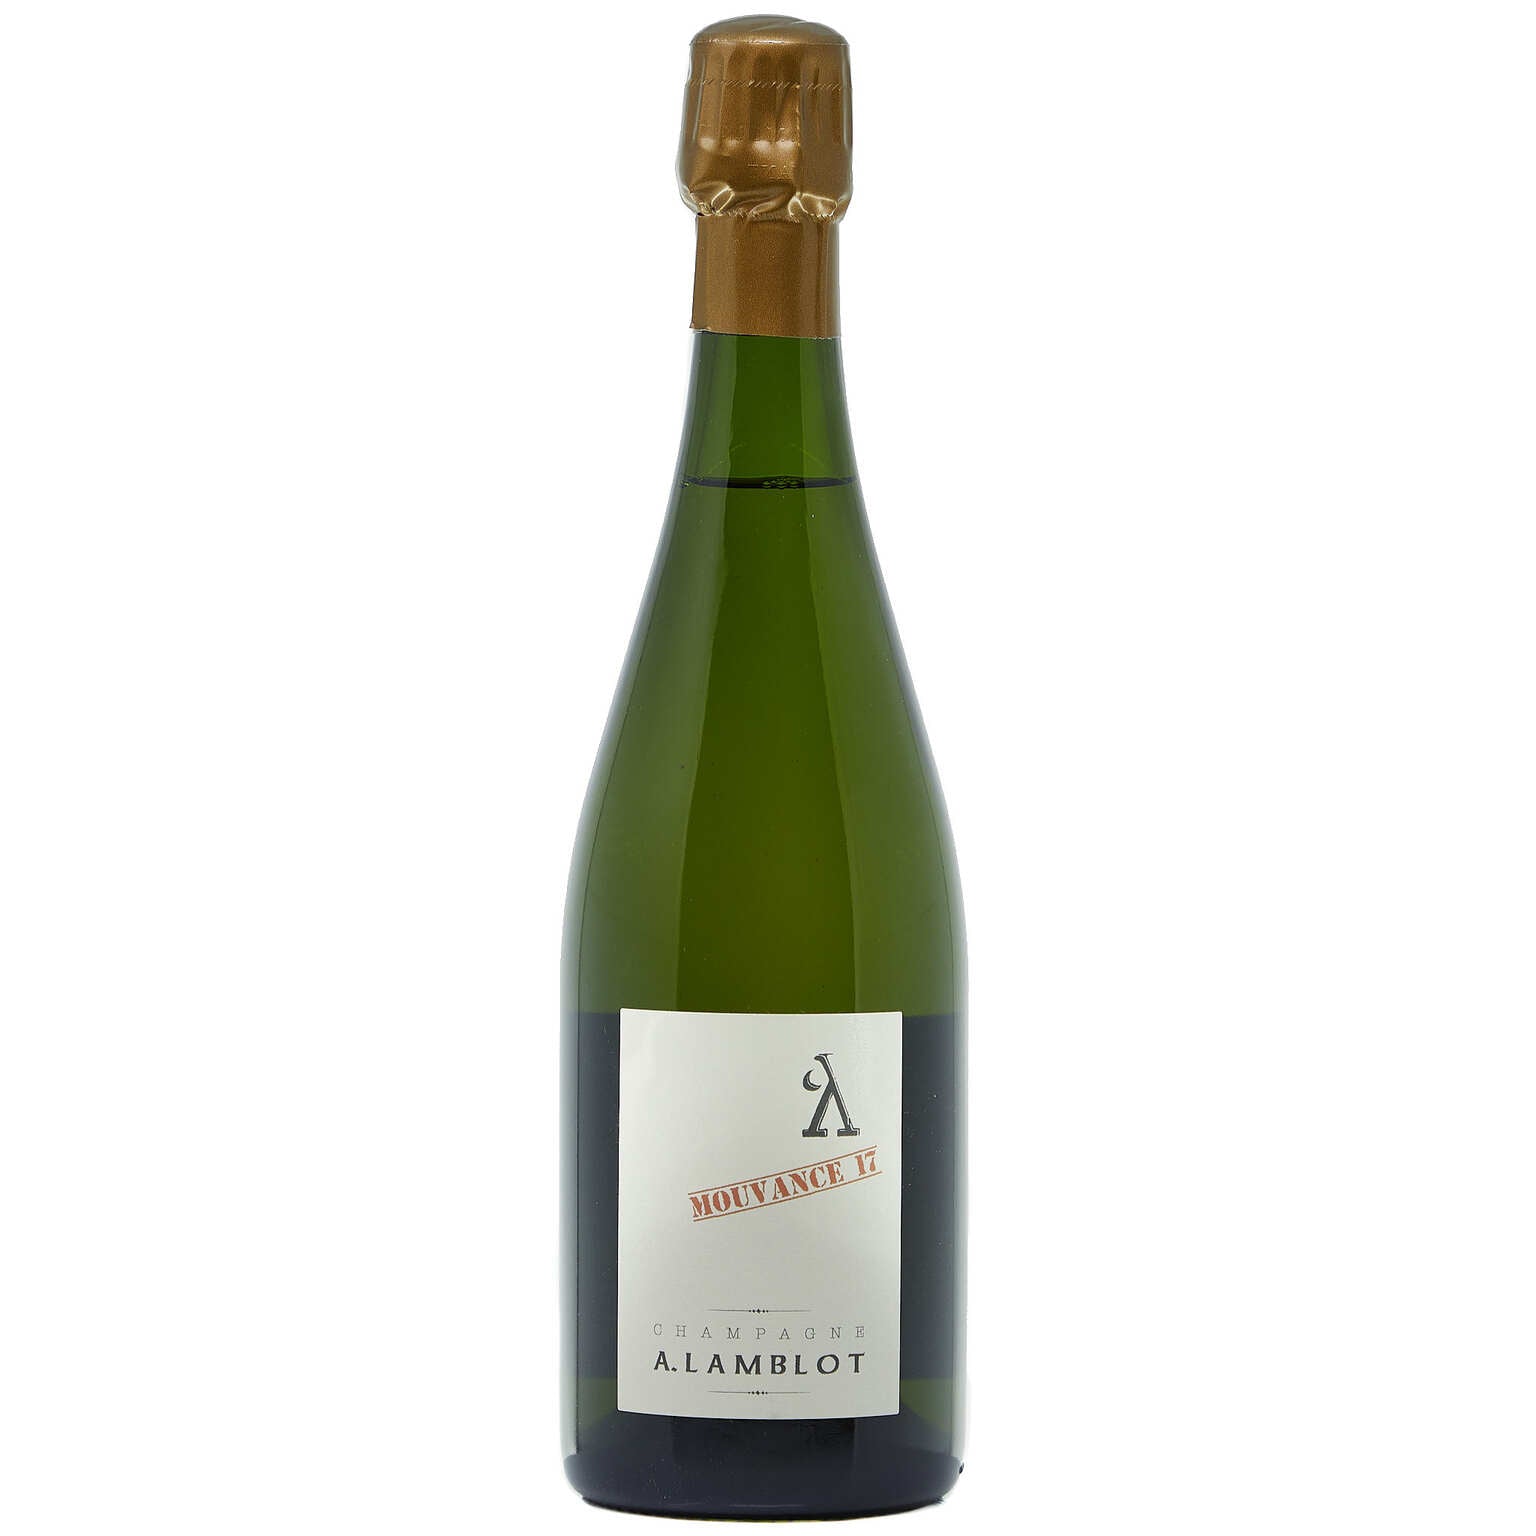 NV A. Lamblot, Mouvance 17, Champagne